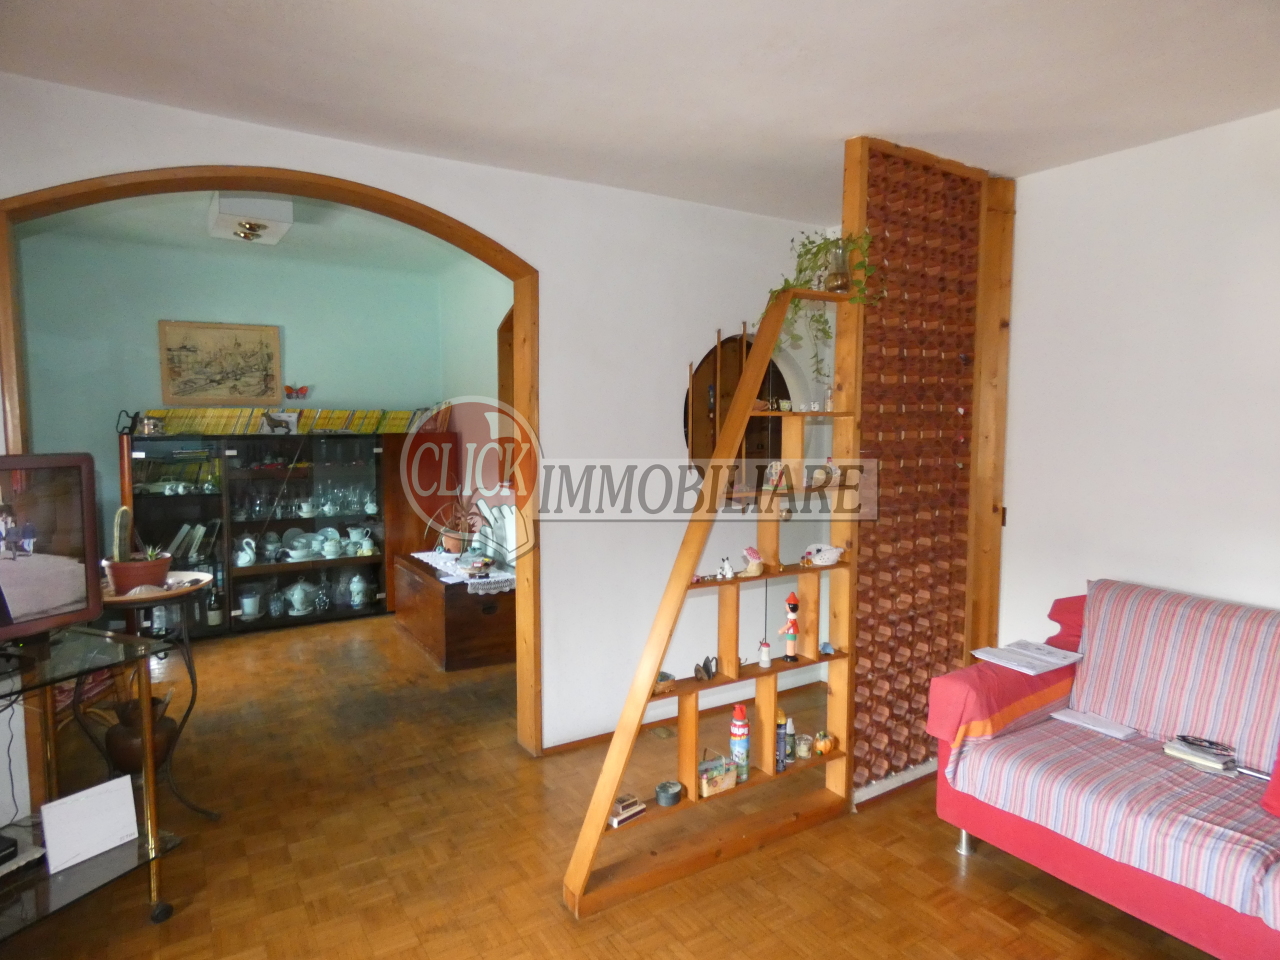 Appartamento in vendita a Vicchio, 6 locali, prezzo € 95.000 | PortaleAgenzieImmobiliari.it